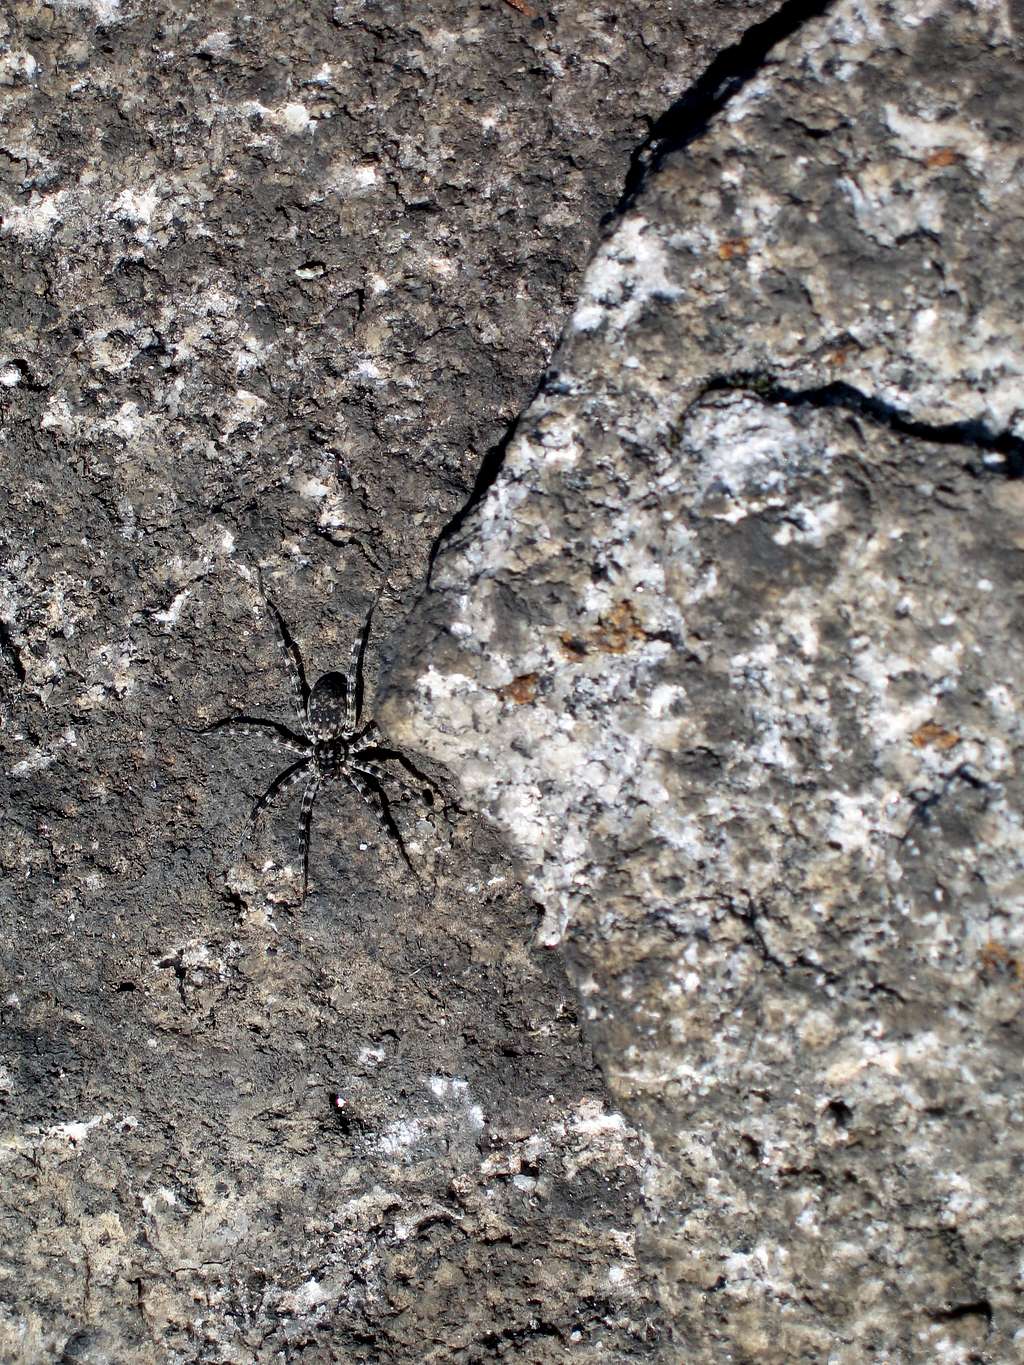 Lichen Colored Spider